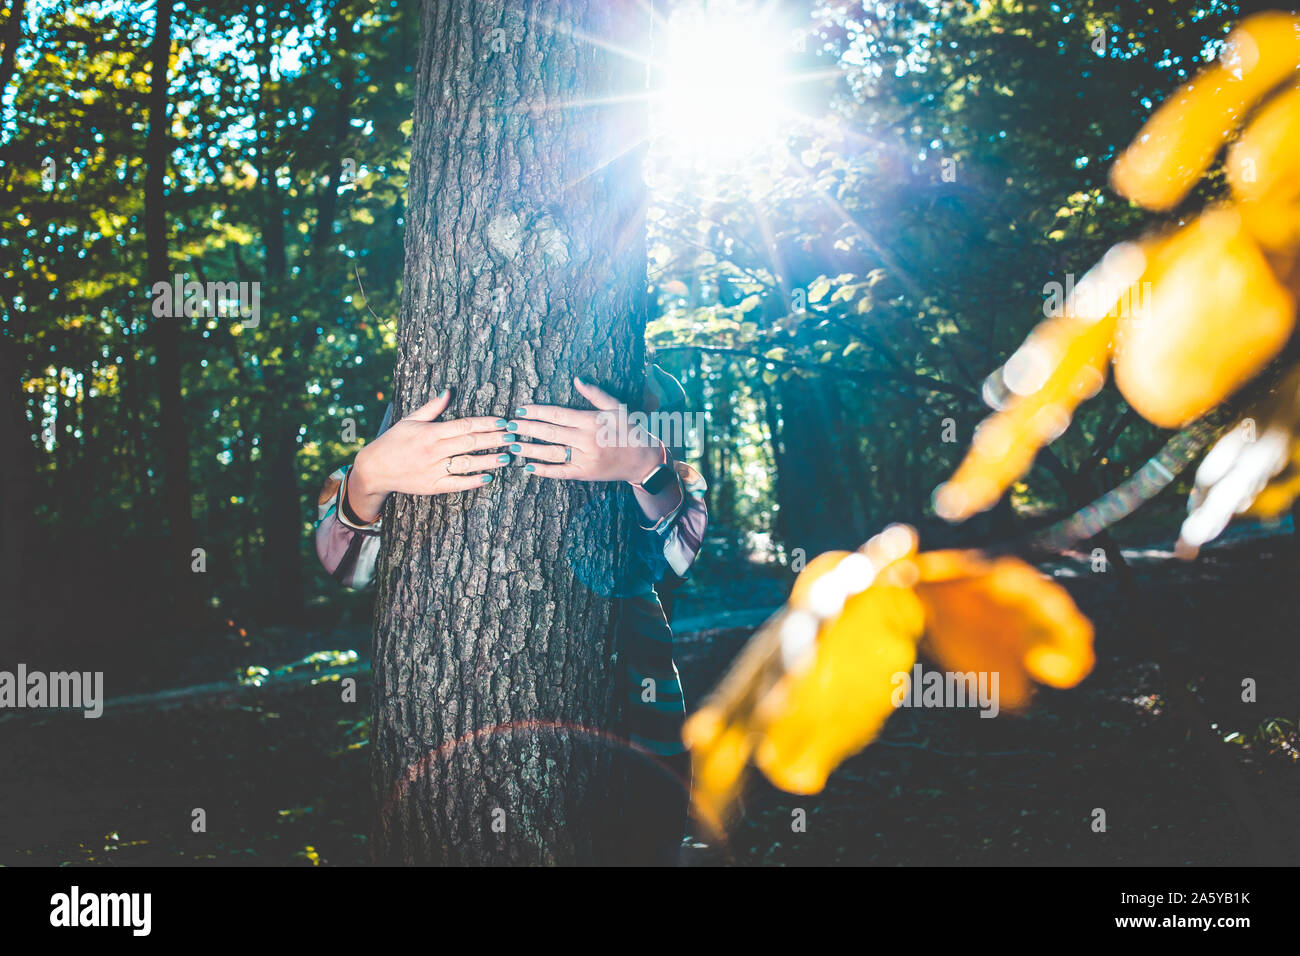 Frau Hände und umarmte einen Baum - Bekämpfung des Klimawandels, speichern Sie den Planeten Erde Stockfoto